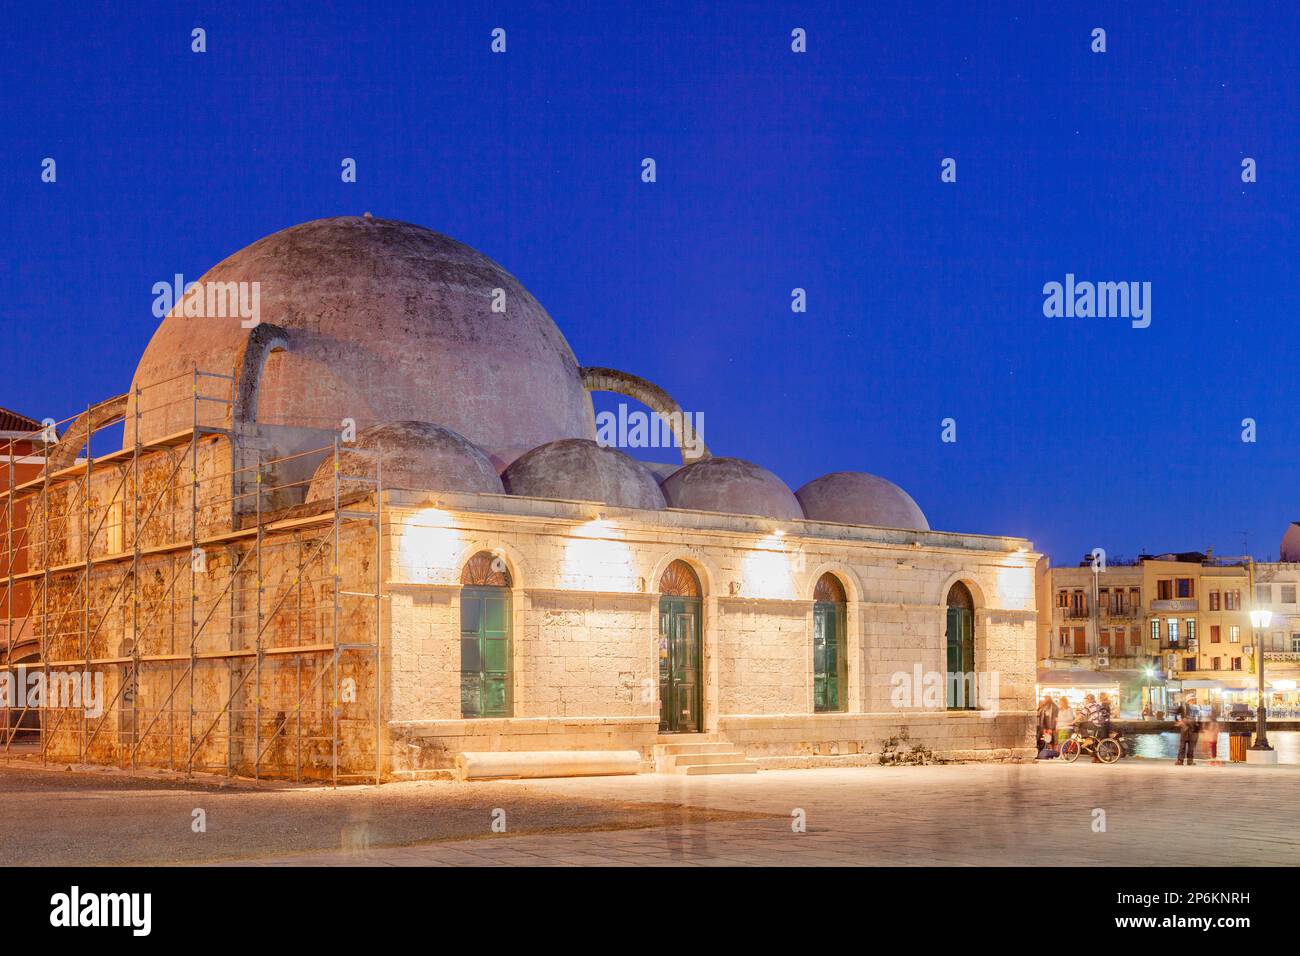 Vue sur l'ancien port vénitien de Haniaet la mosquée Janissars. Crète, Grèce. Banque D'Images